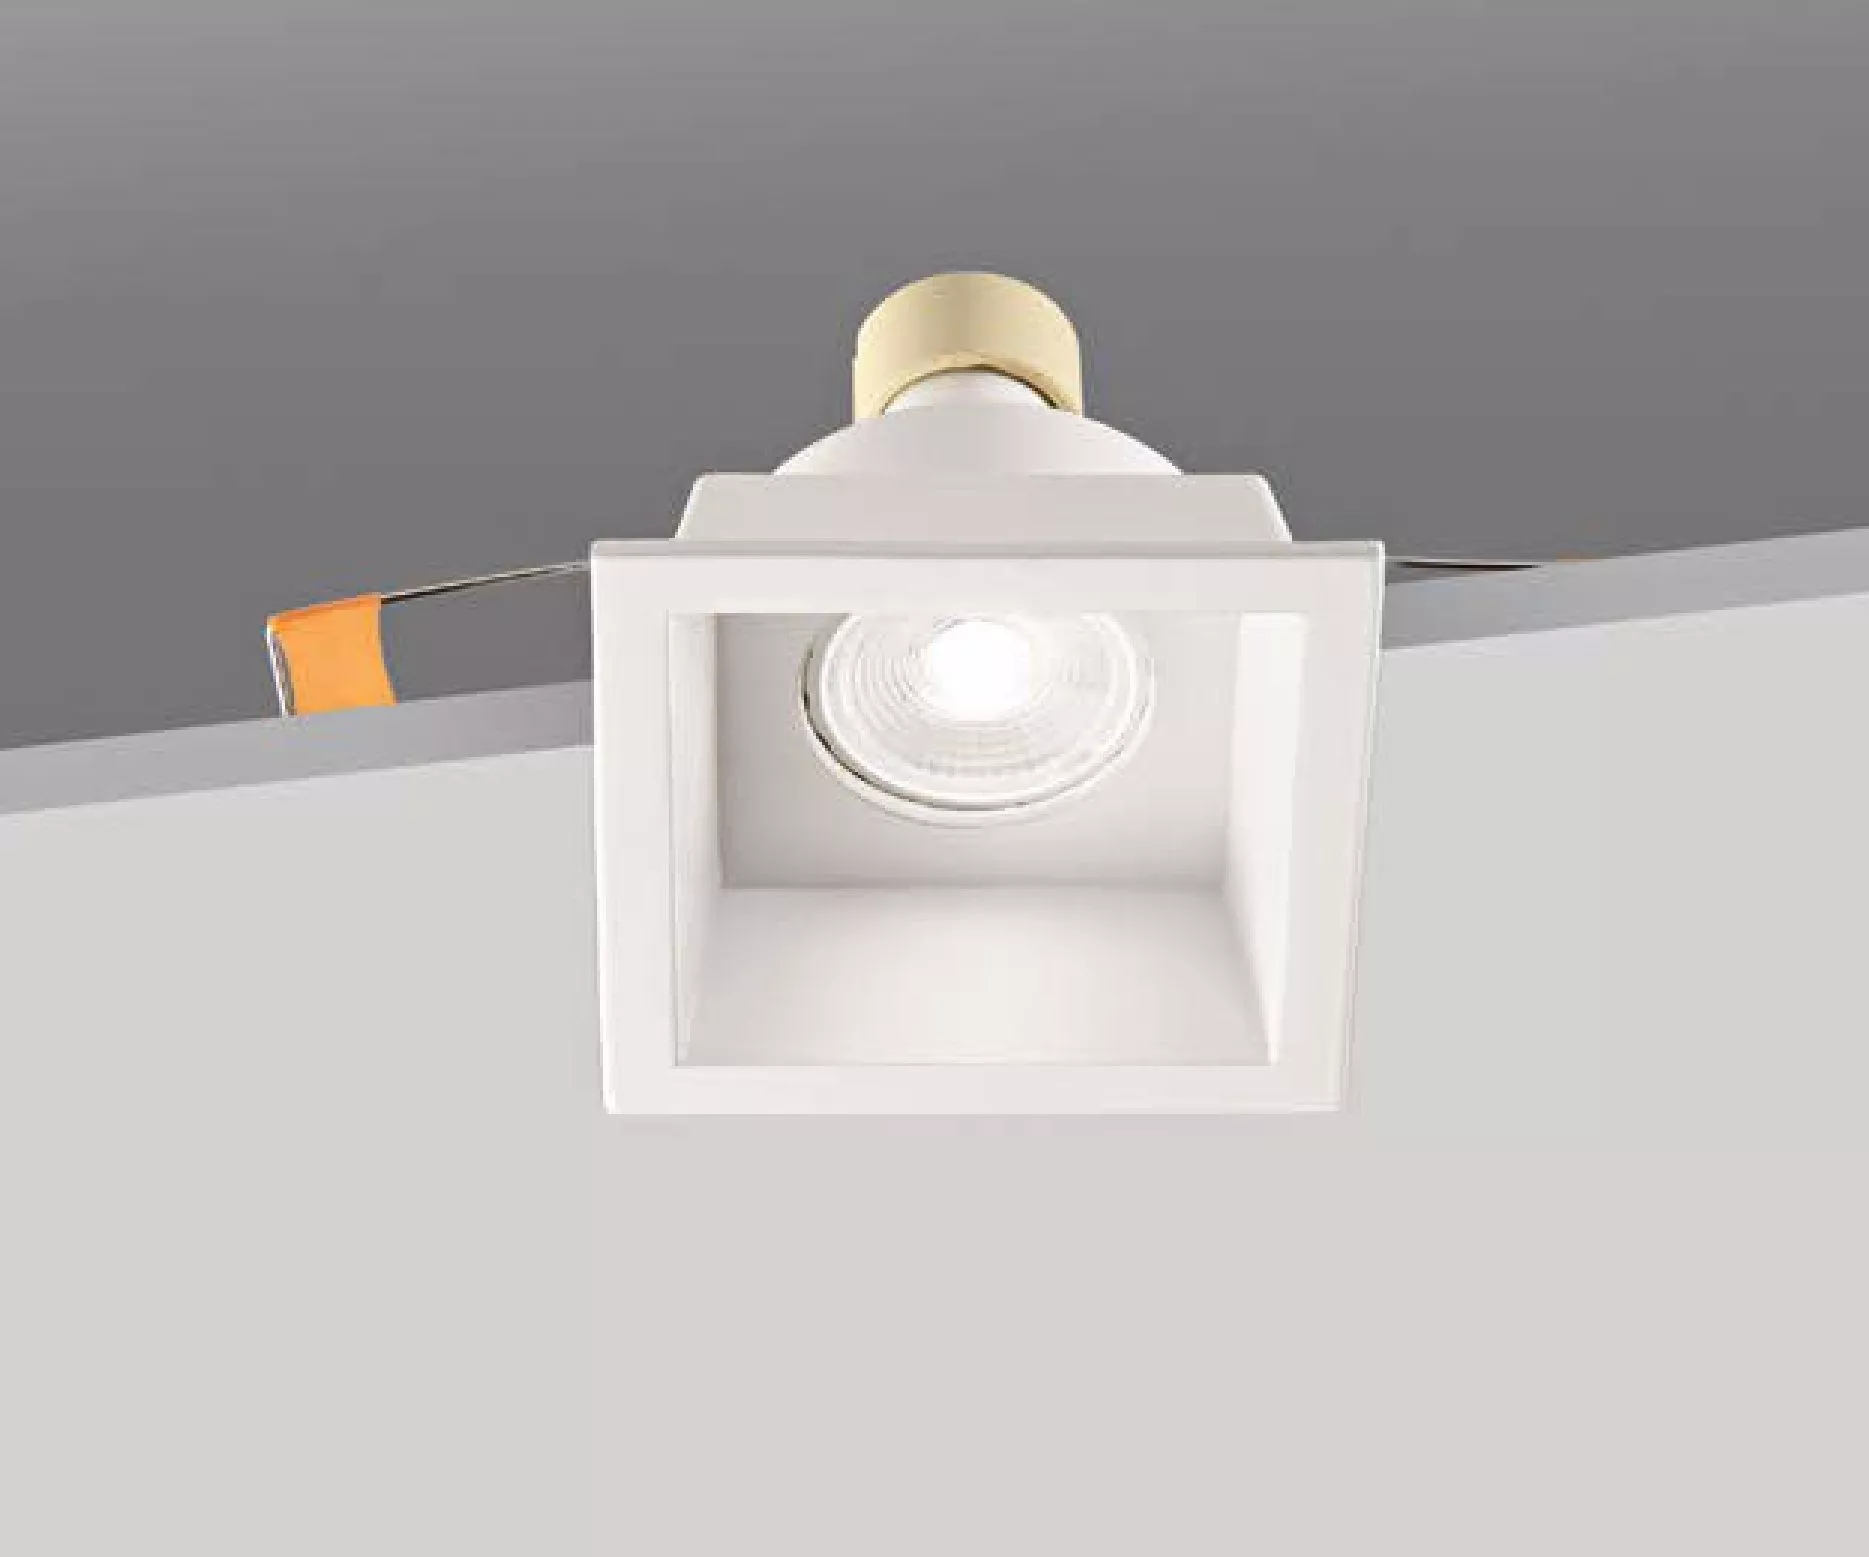 CONEX illuminazione Faretto led incasso GU10 bianco fisso Conex lampade